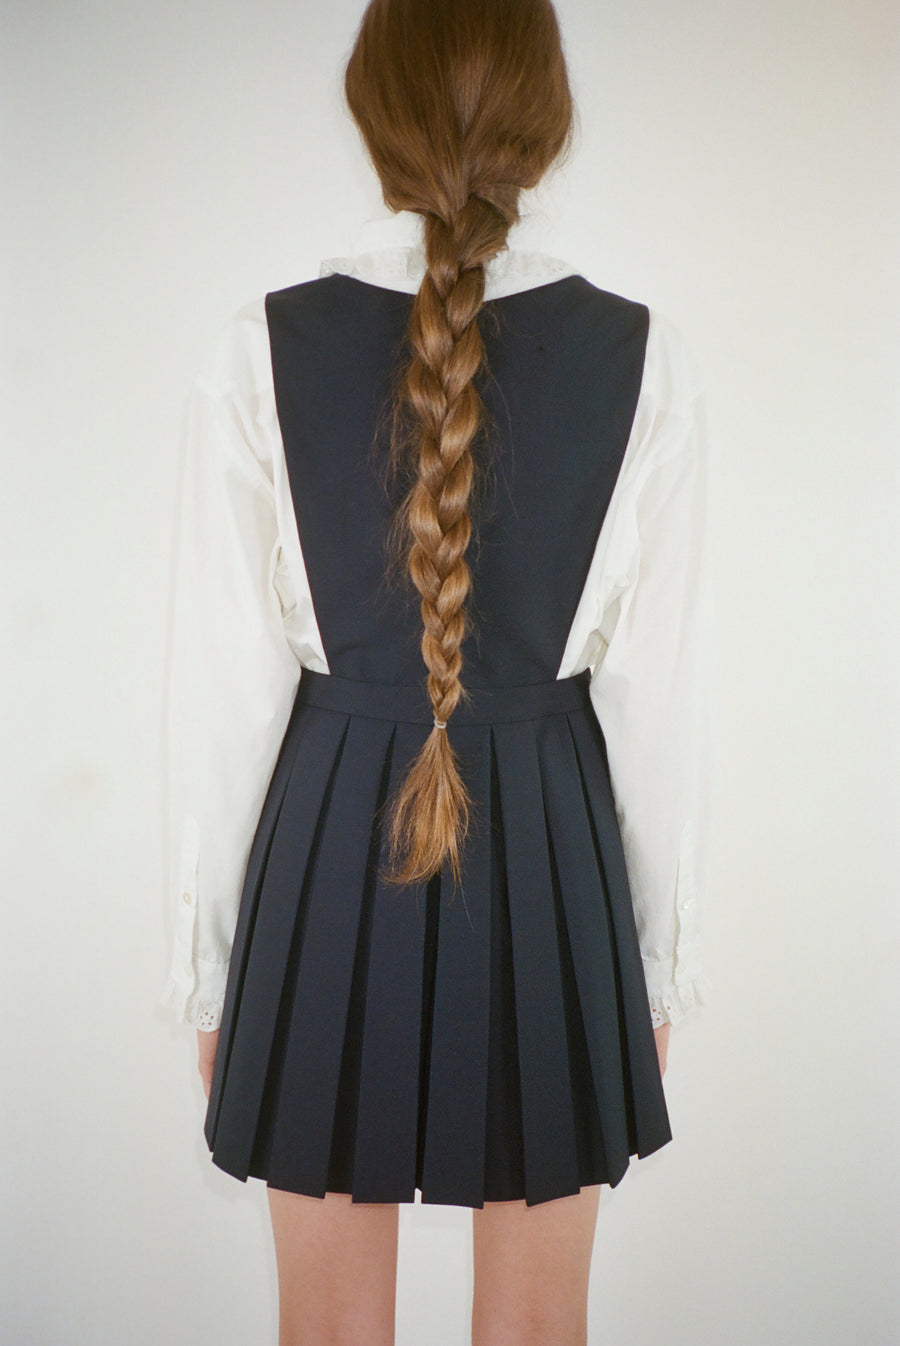 Wool pleated mini dress in navy on model